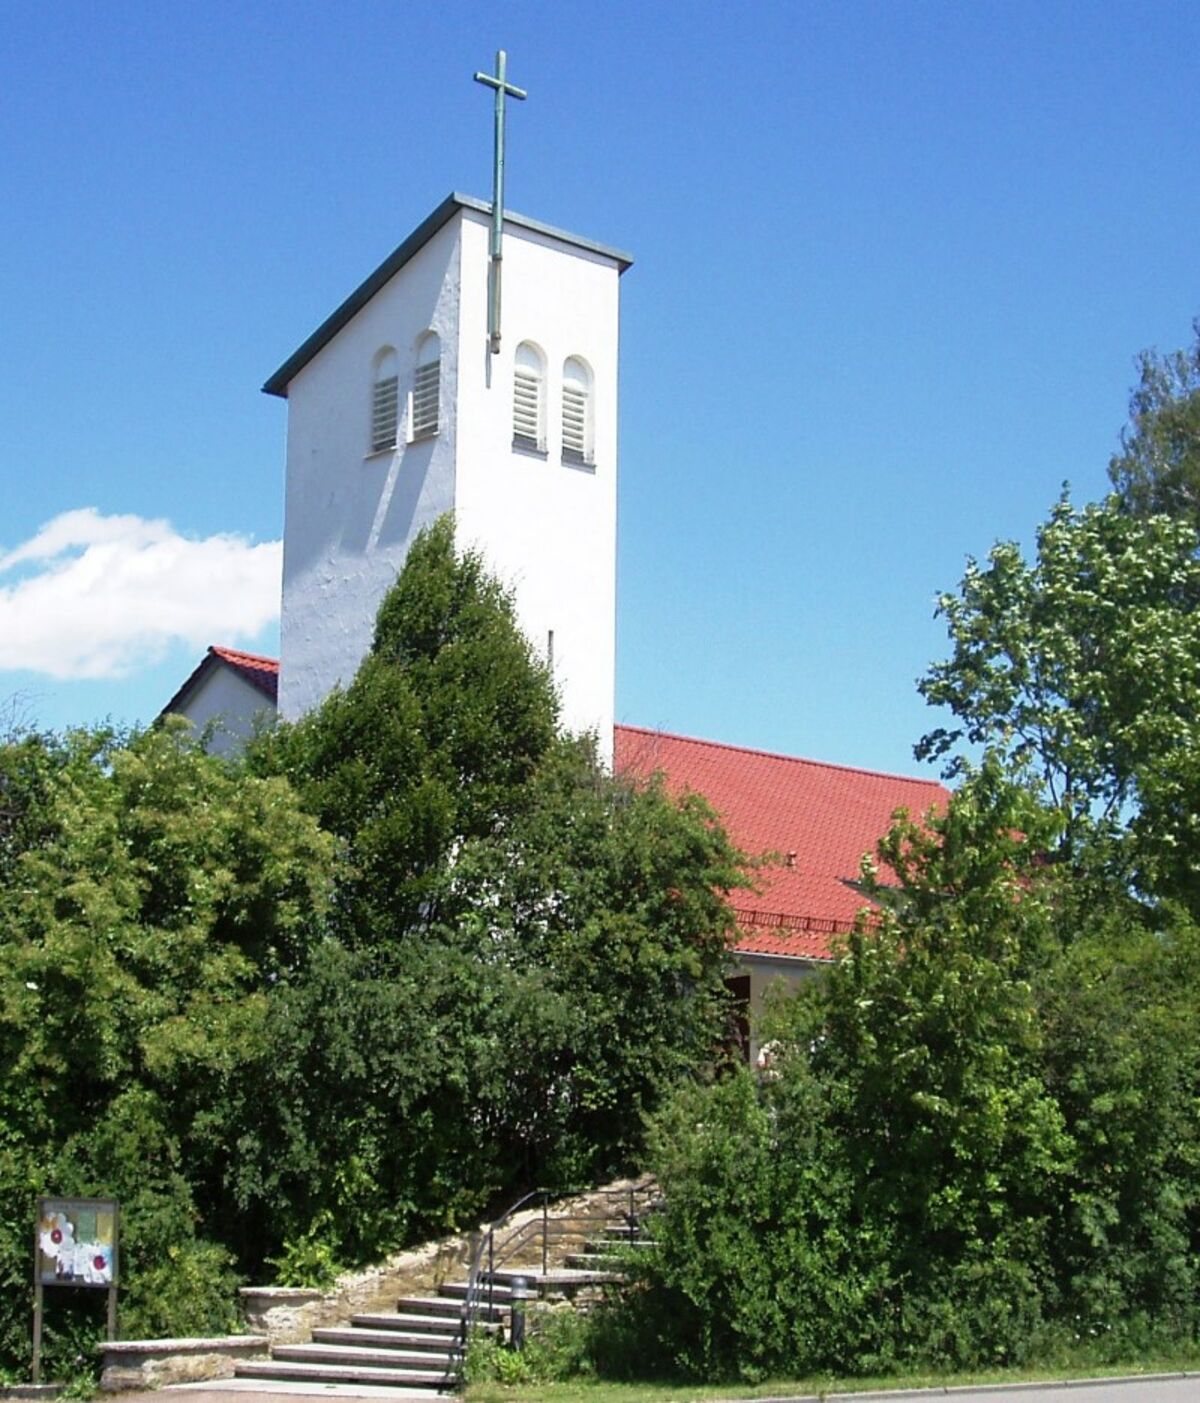 Evangelische Kreuzkirche